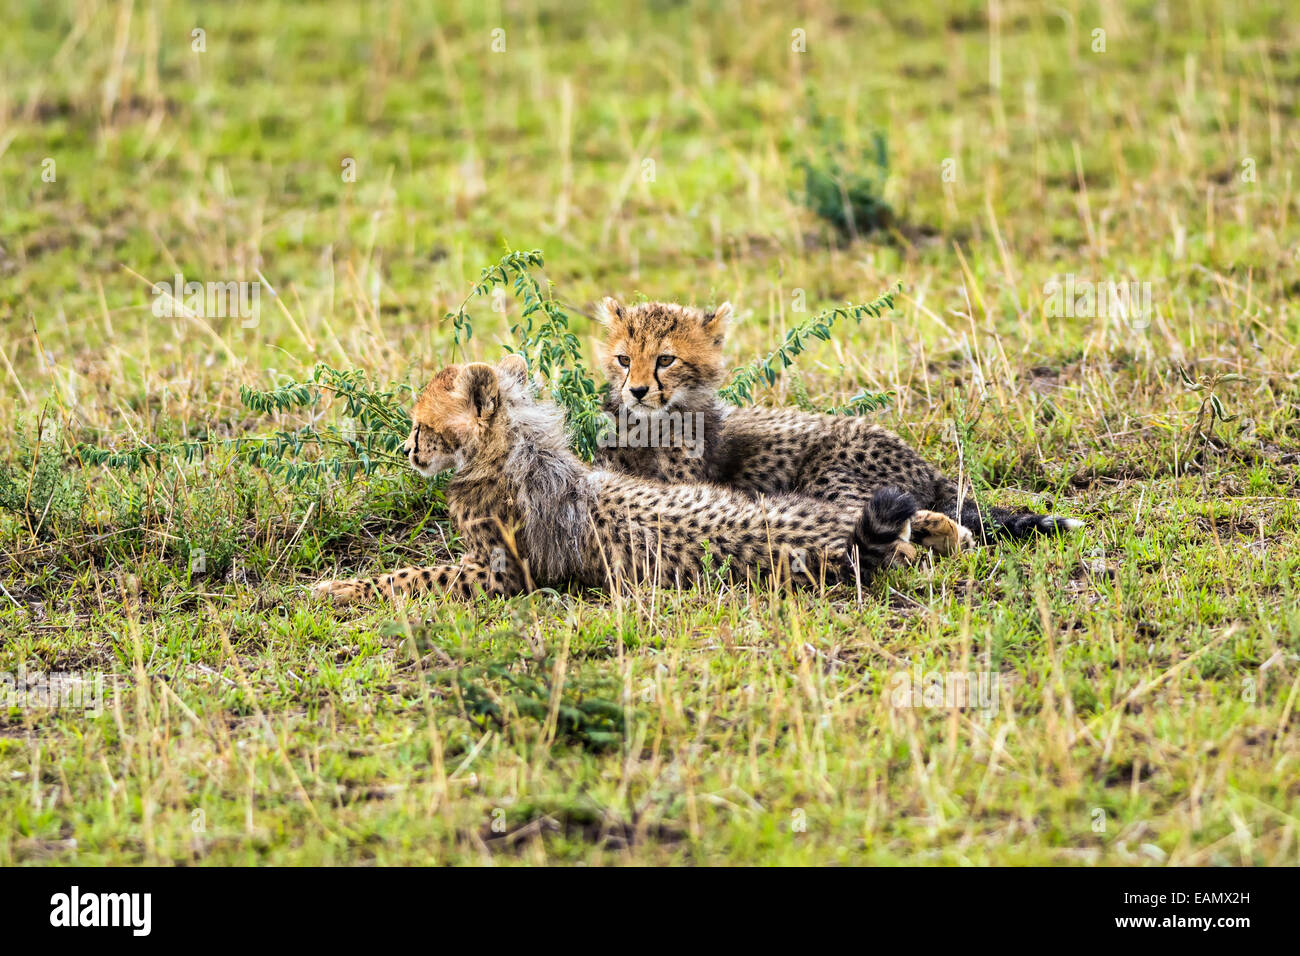 Two cheetah cubs (Acinonyx jubatus) relaxing on savannah. Maasai Mara National Reserve, Kenya. Stock Photo